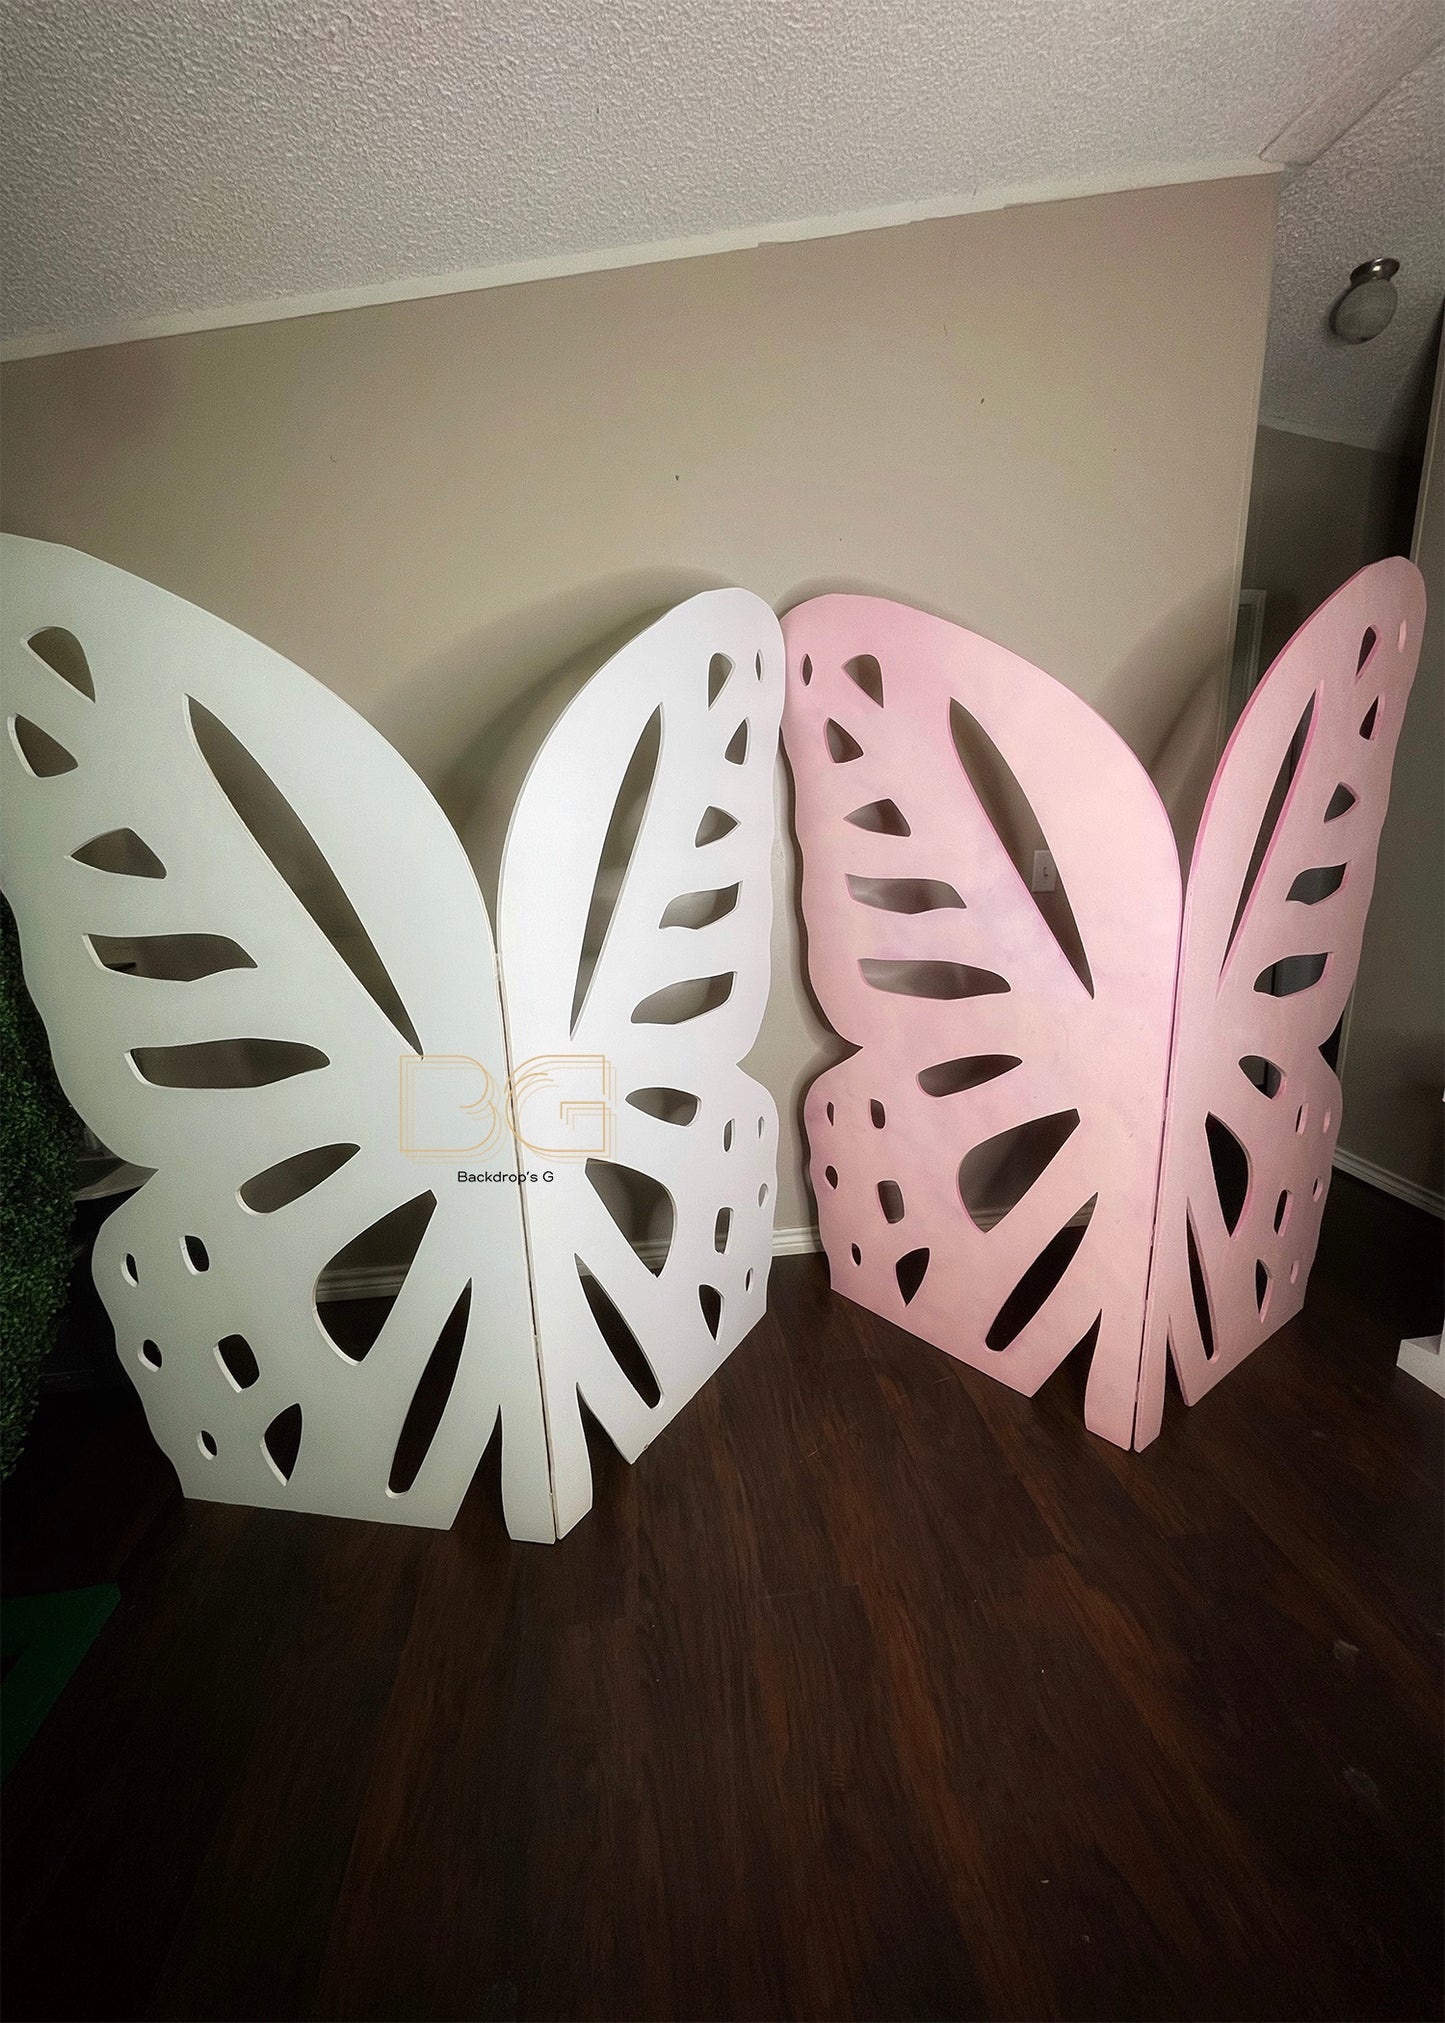 Butterfly Wings Foldable